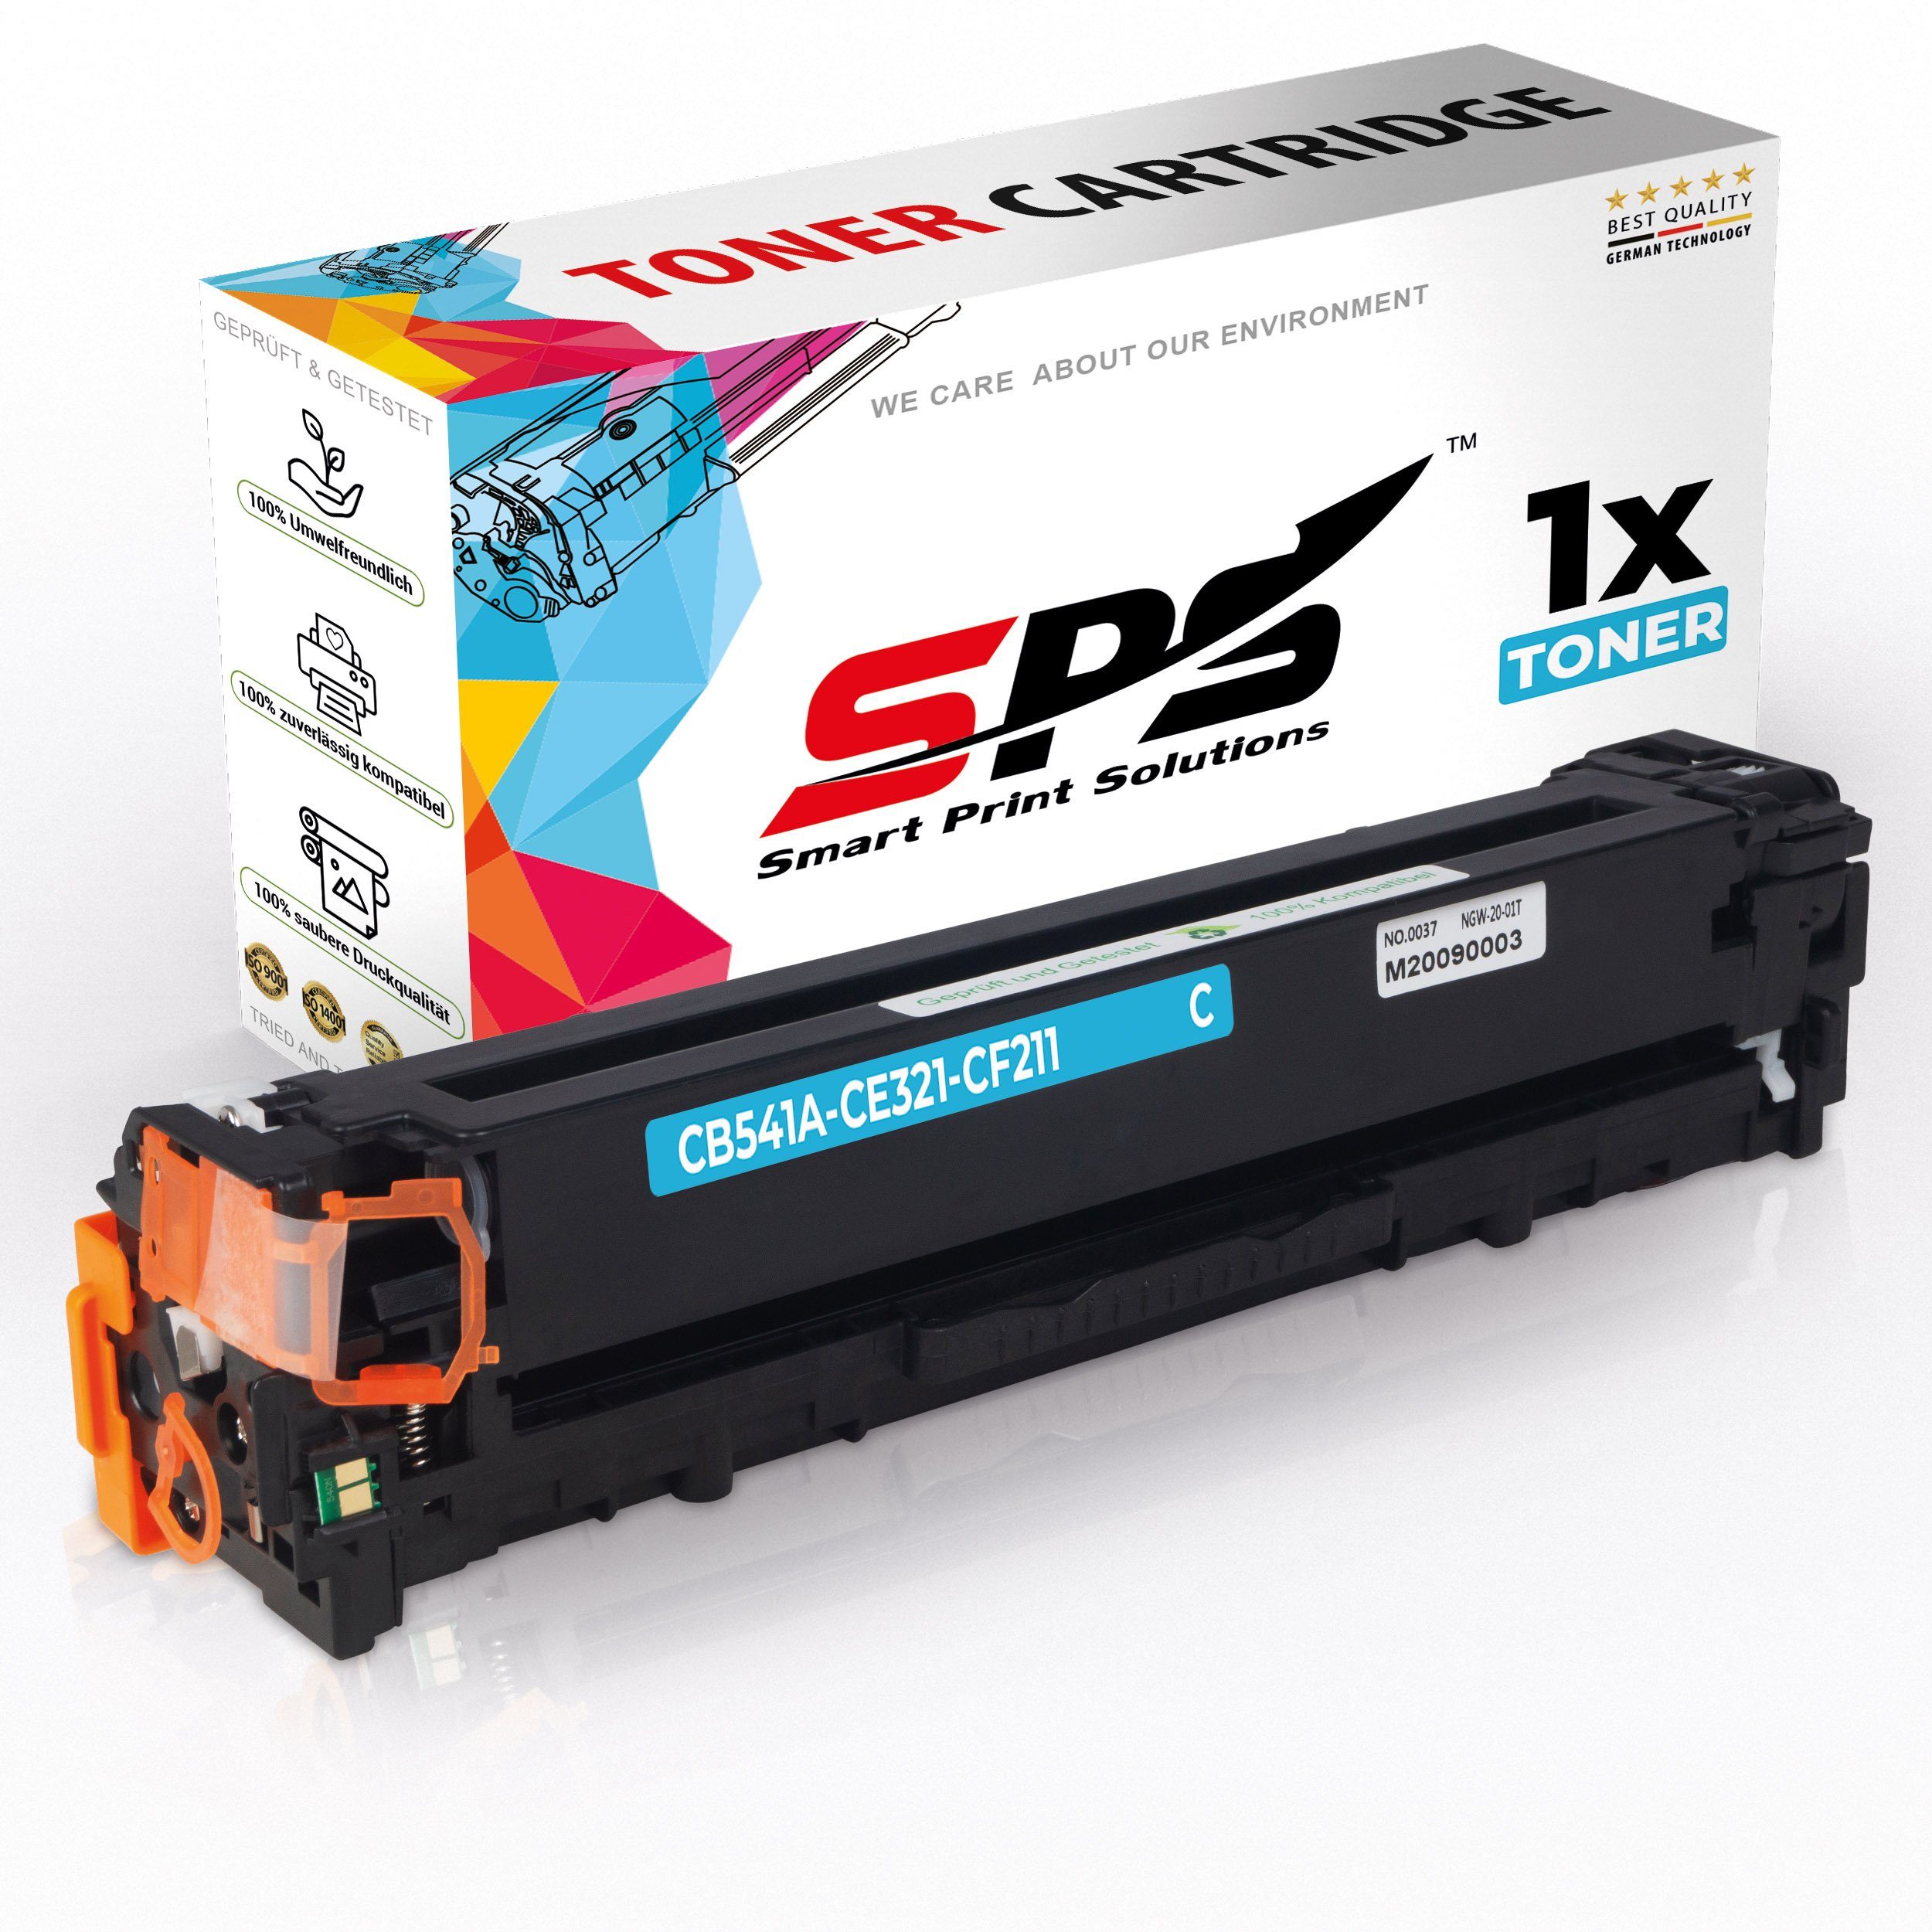 SPS Tonerkartusche Kompatibel für HP Color Laserjet CM 1312 NFI (CB54, (1er Pack, 1x Toner)